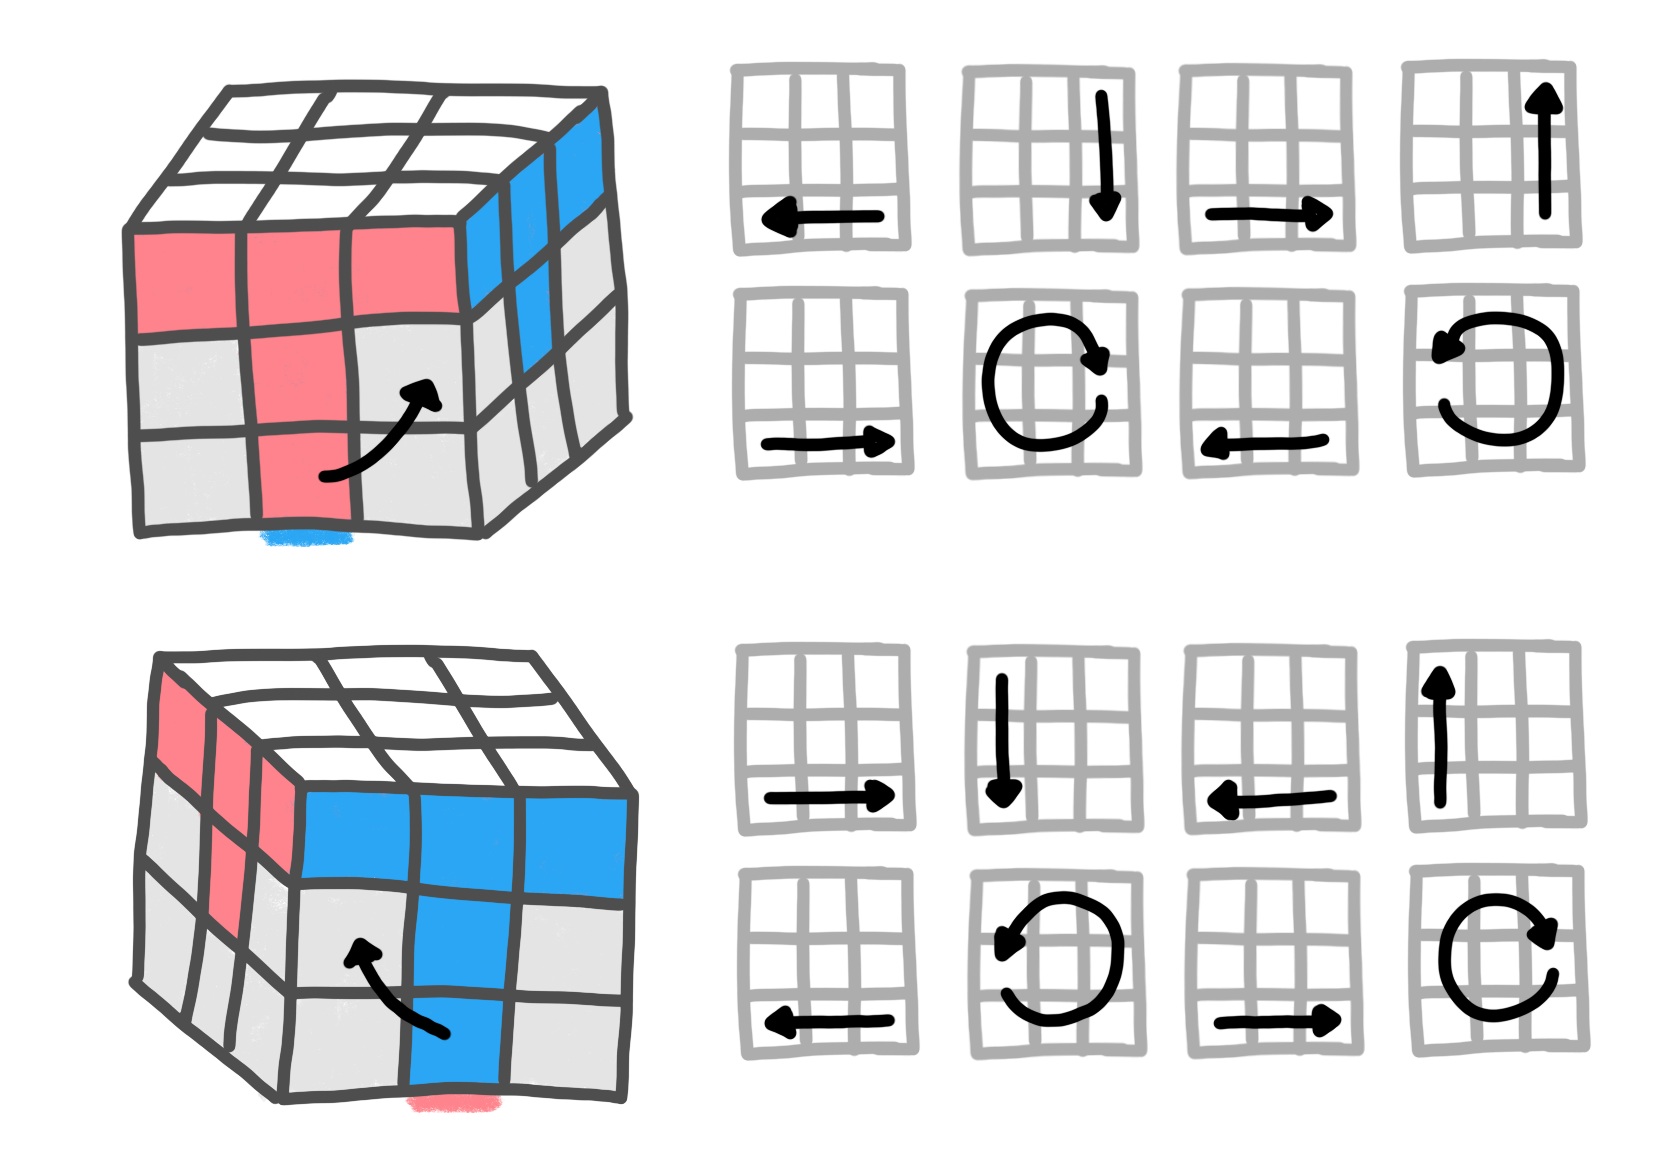 2nd layer rubix cube